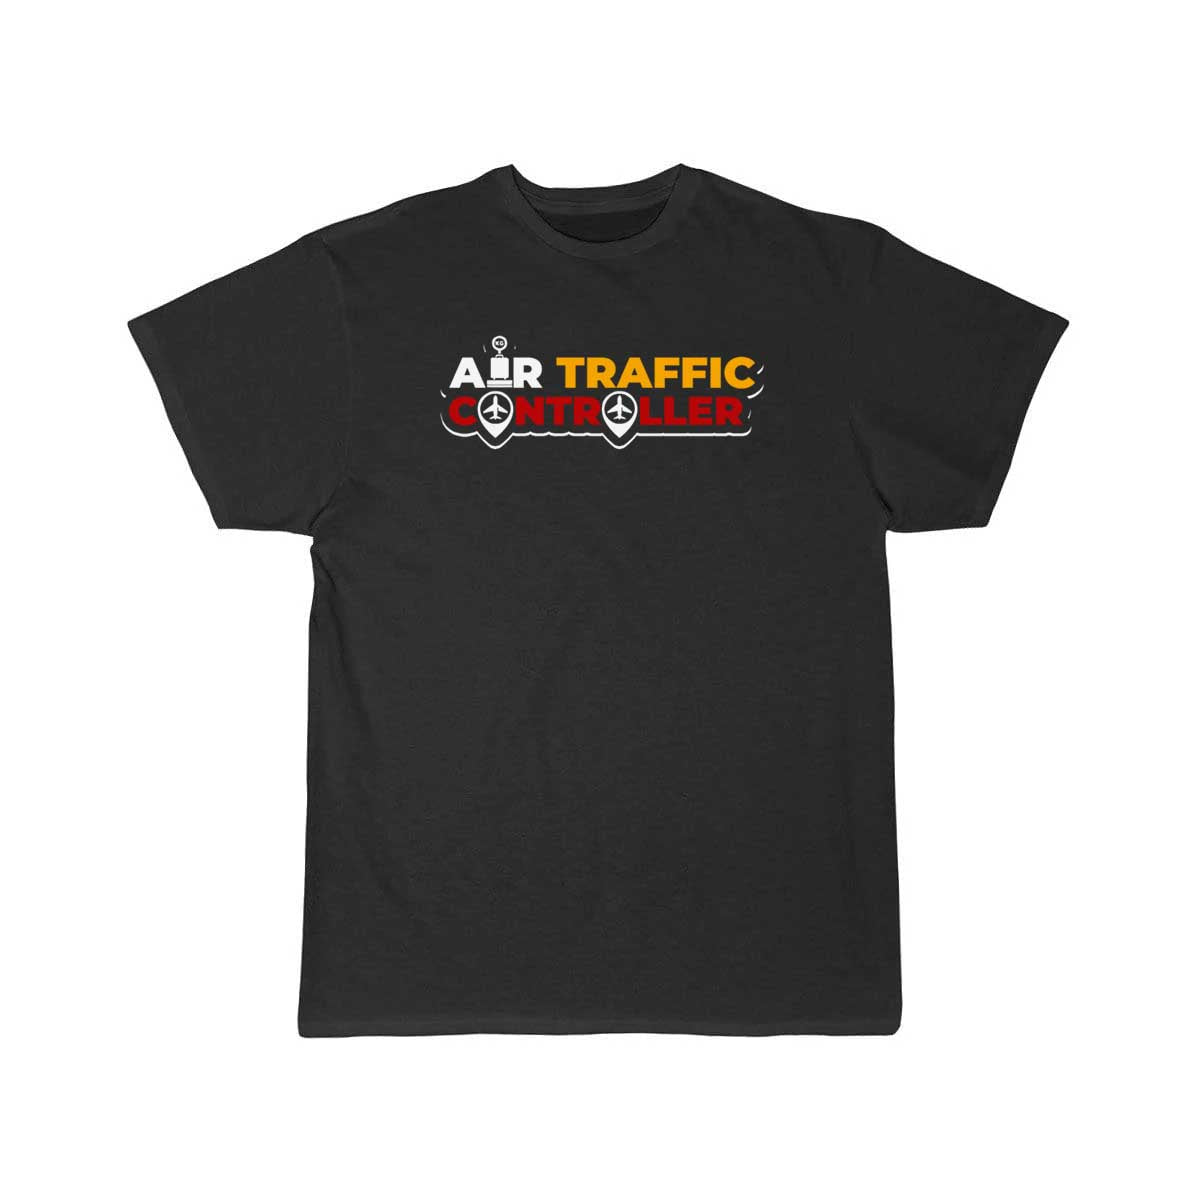 Air traffic control T-shirt & gift air traffic contol T-SHIRT THE AV8R